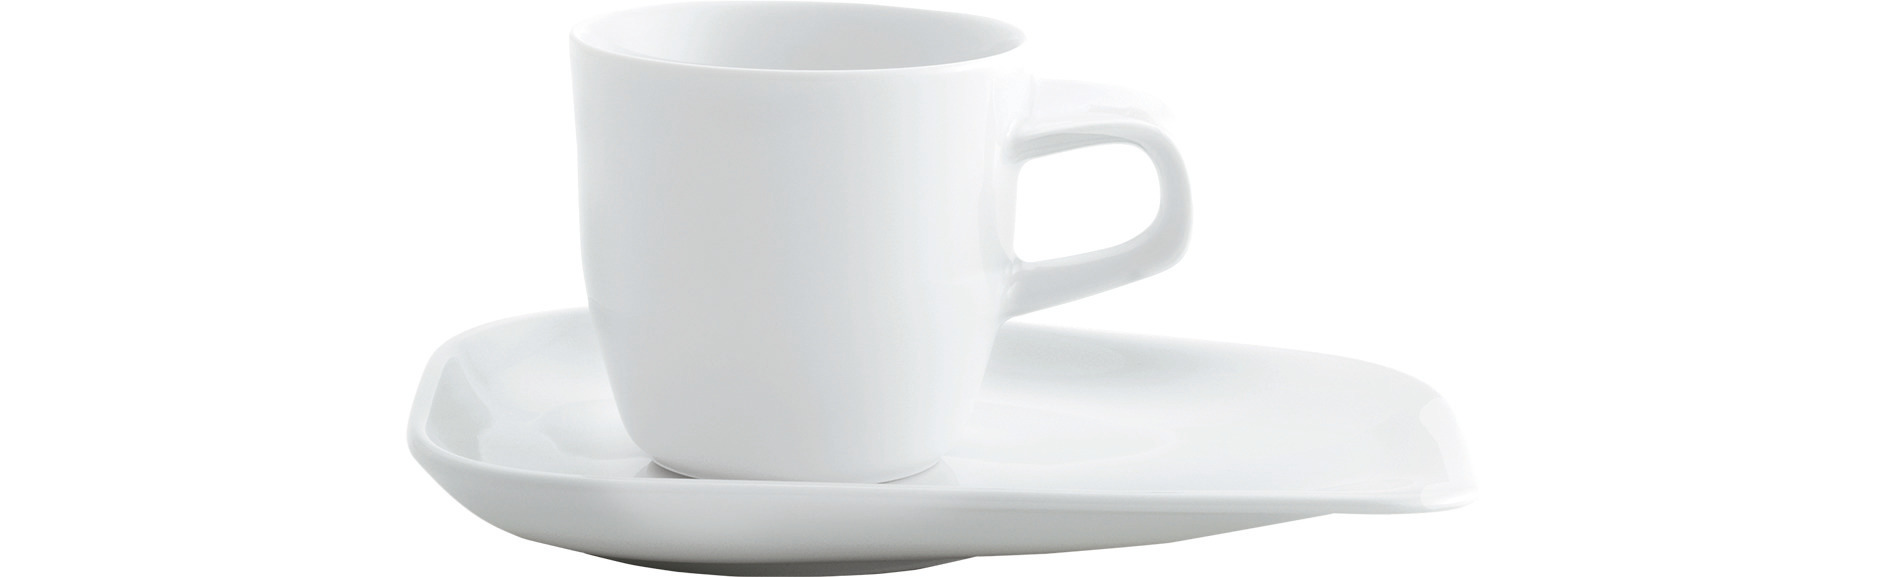 Elixyr, Kaffee-Obertasse 0,20 l weiß